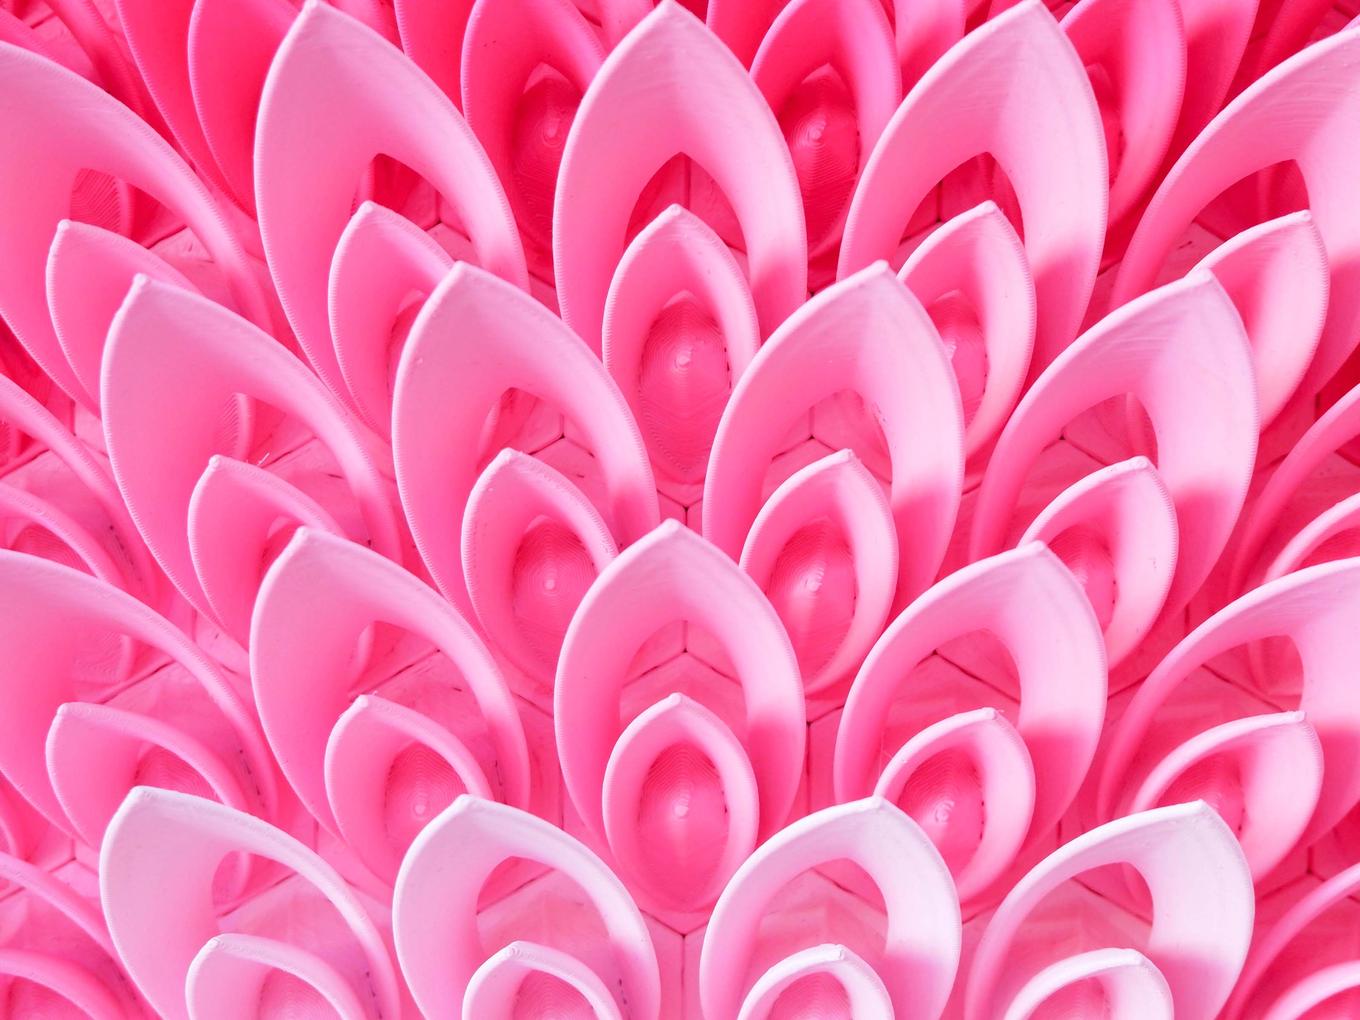 Flourshing Lotus | Herschel Shapiro | Abstract Relief Sculpture